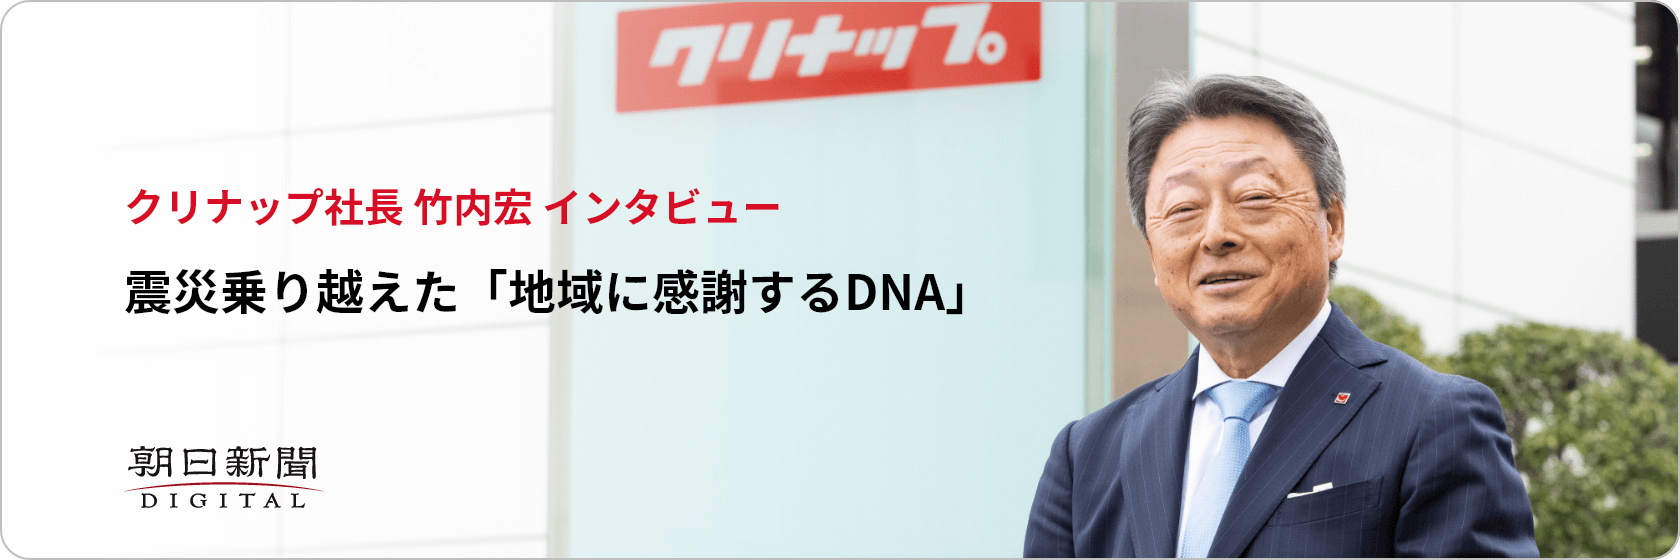 クリナップ社長 竹内宏 インタビュー 震災乗り越えた「地域に感謝するDNA」 朝日新聞DIGITAL